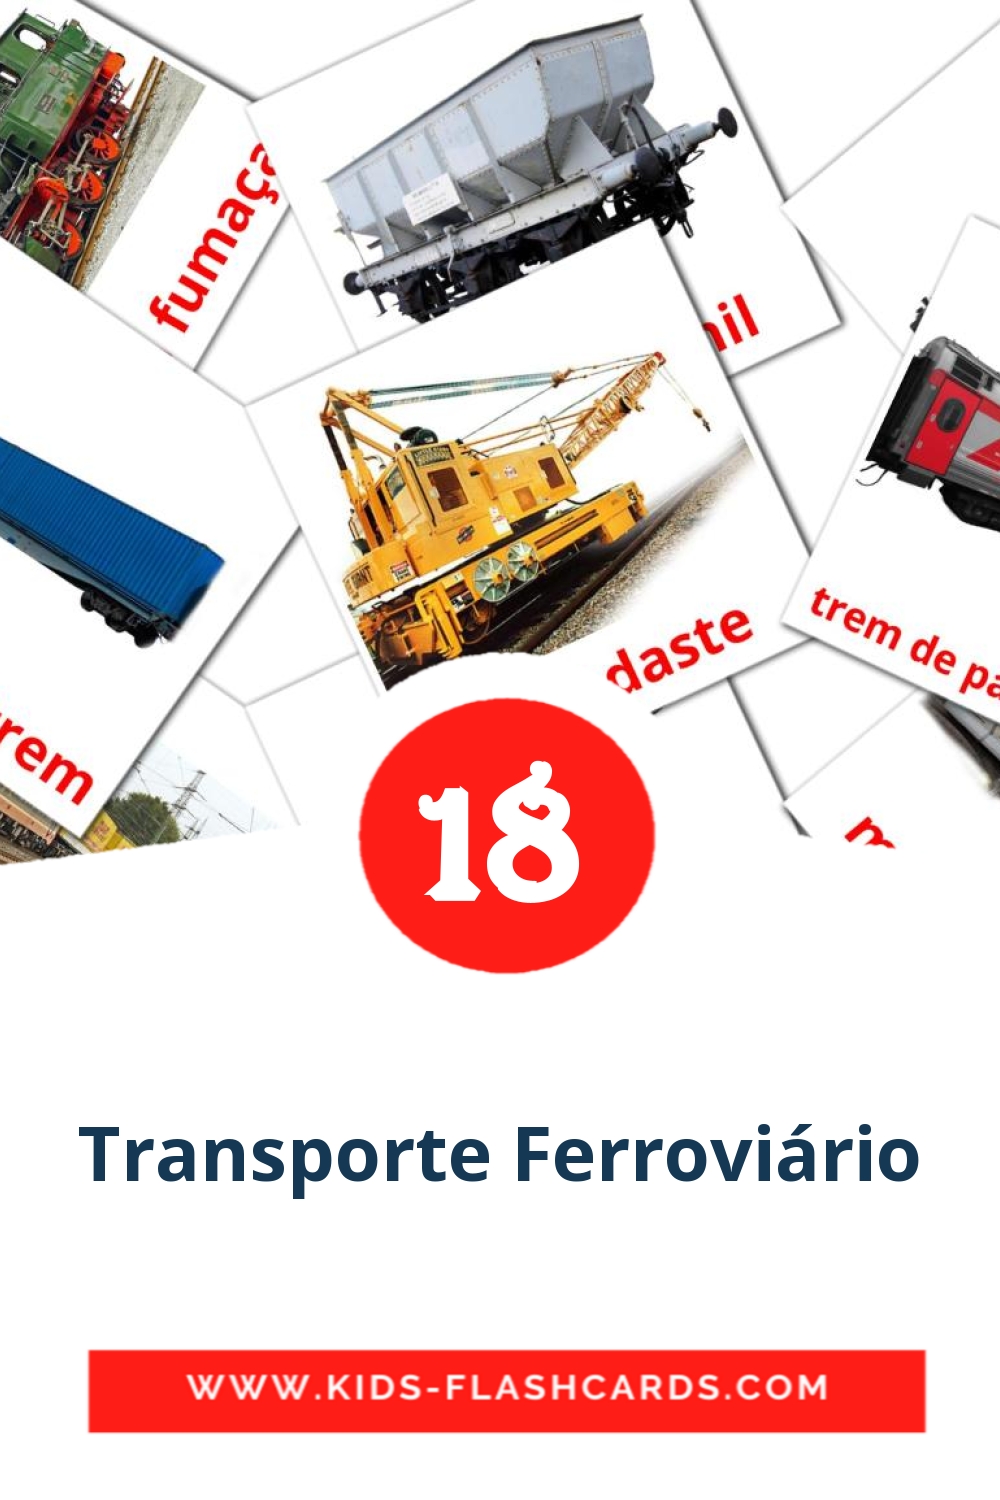 18 carte illustrate di Transporte Ferroviário per la scuola materna in portoghese